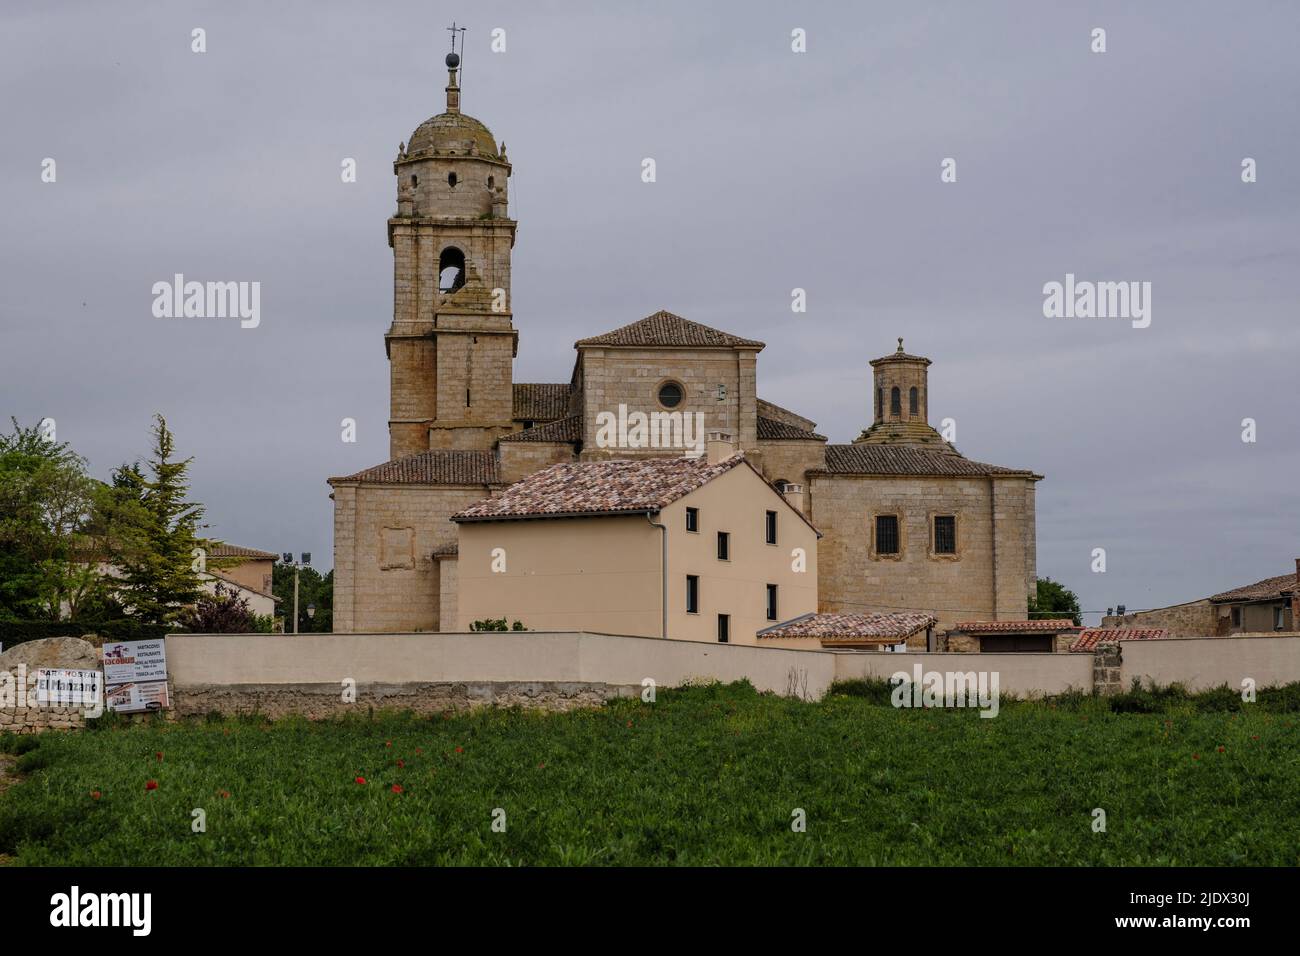 Spagna, Castrojeriz. Chiesa di Santa María del Manzano. Foto Stock